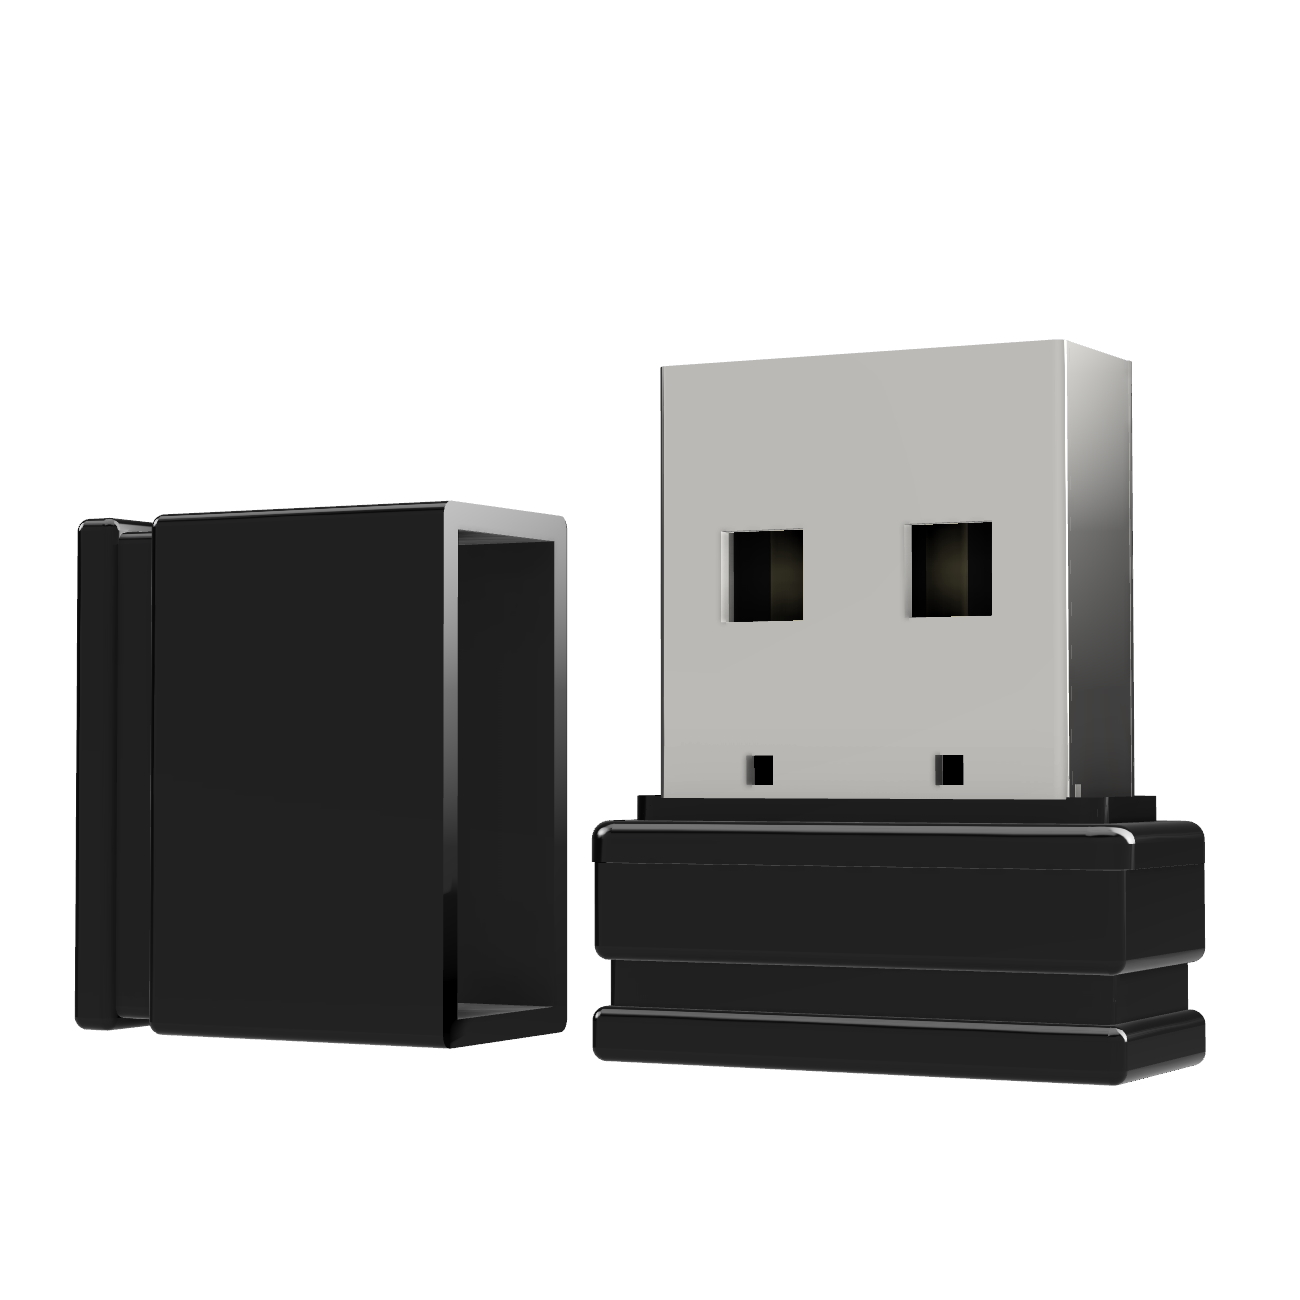 ®ULTRA GB) USB P1 Mini USB-Stick GERMANY 2 (Schwarz,